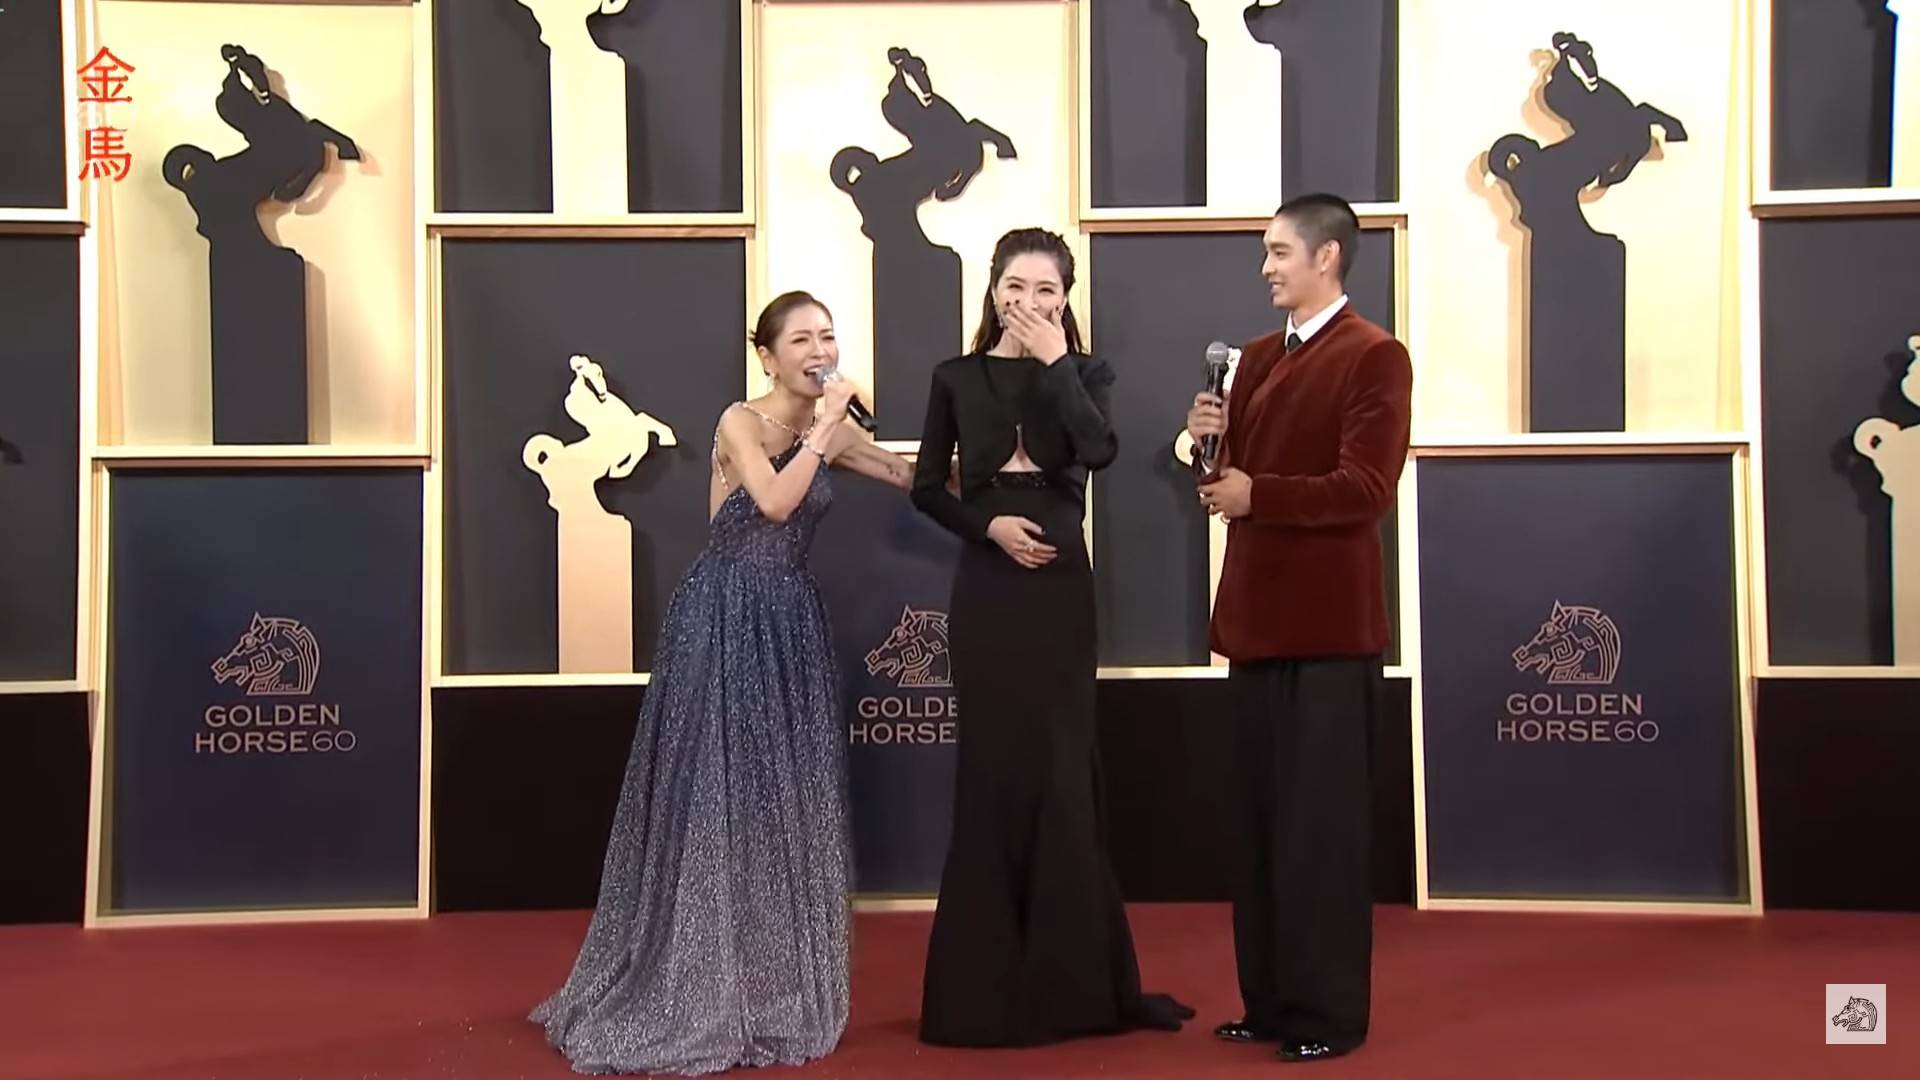 在第60屆金馬獎擔任頒獎嘉賓的謝盈萱一身俐落率性的黑色長禮服非常吸睛